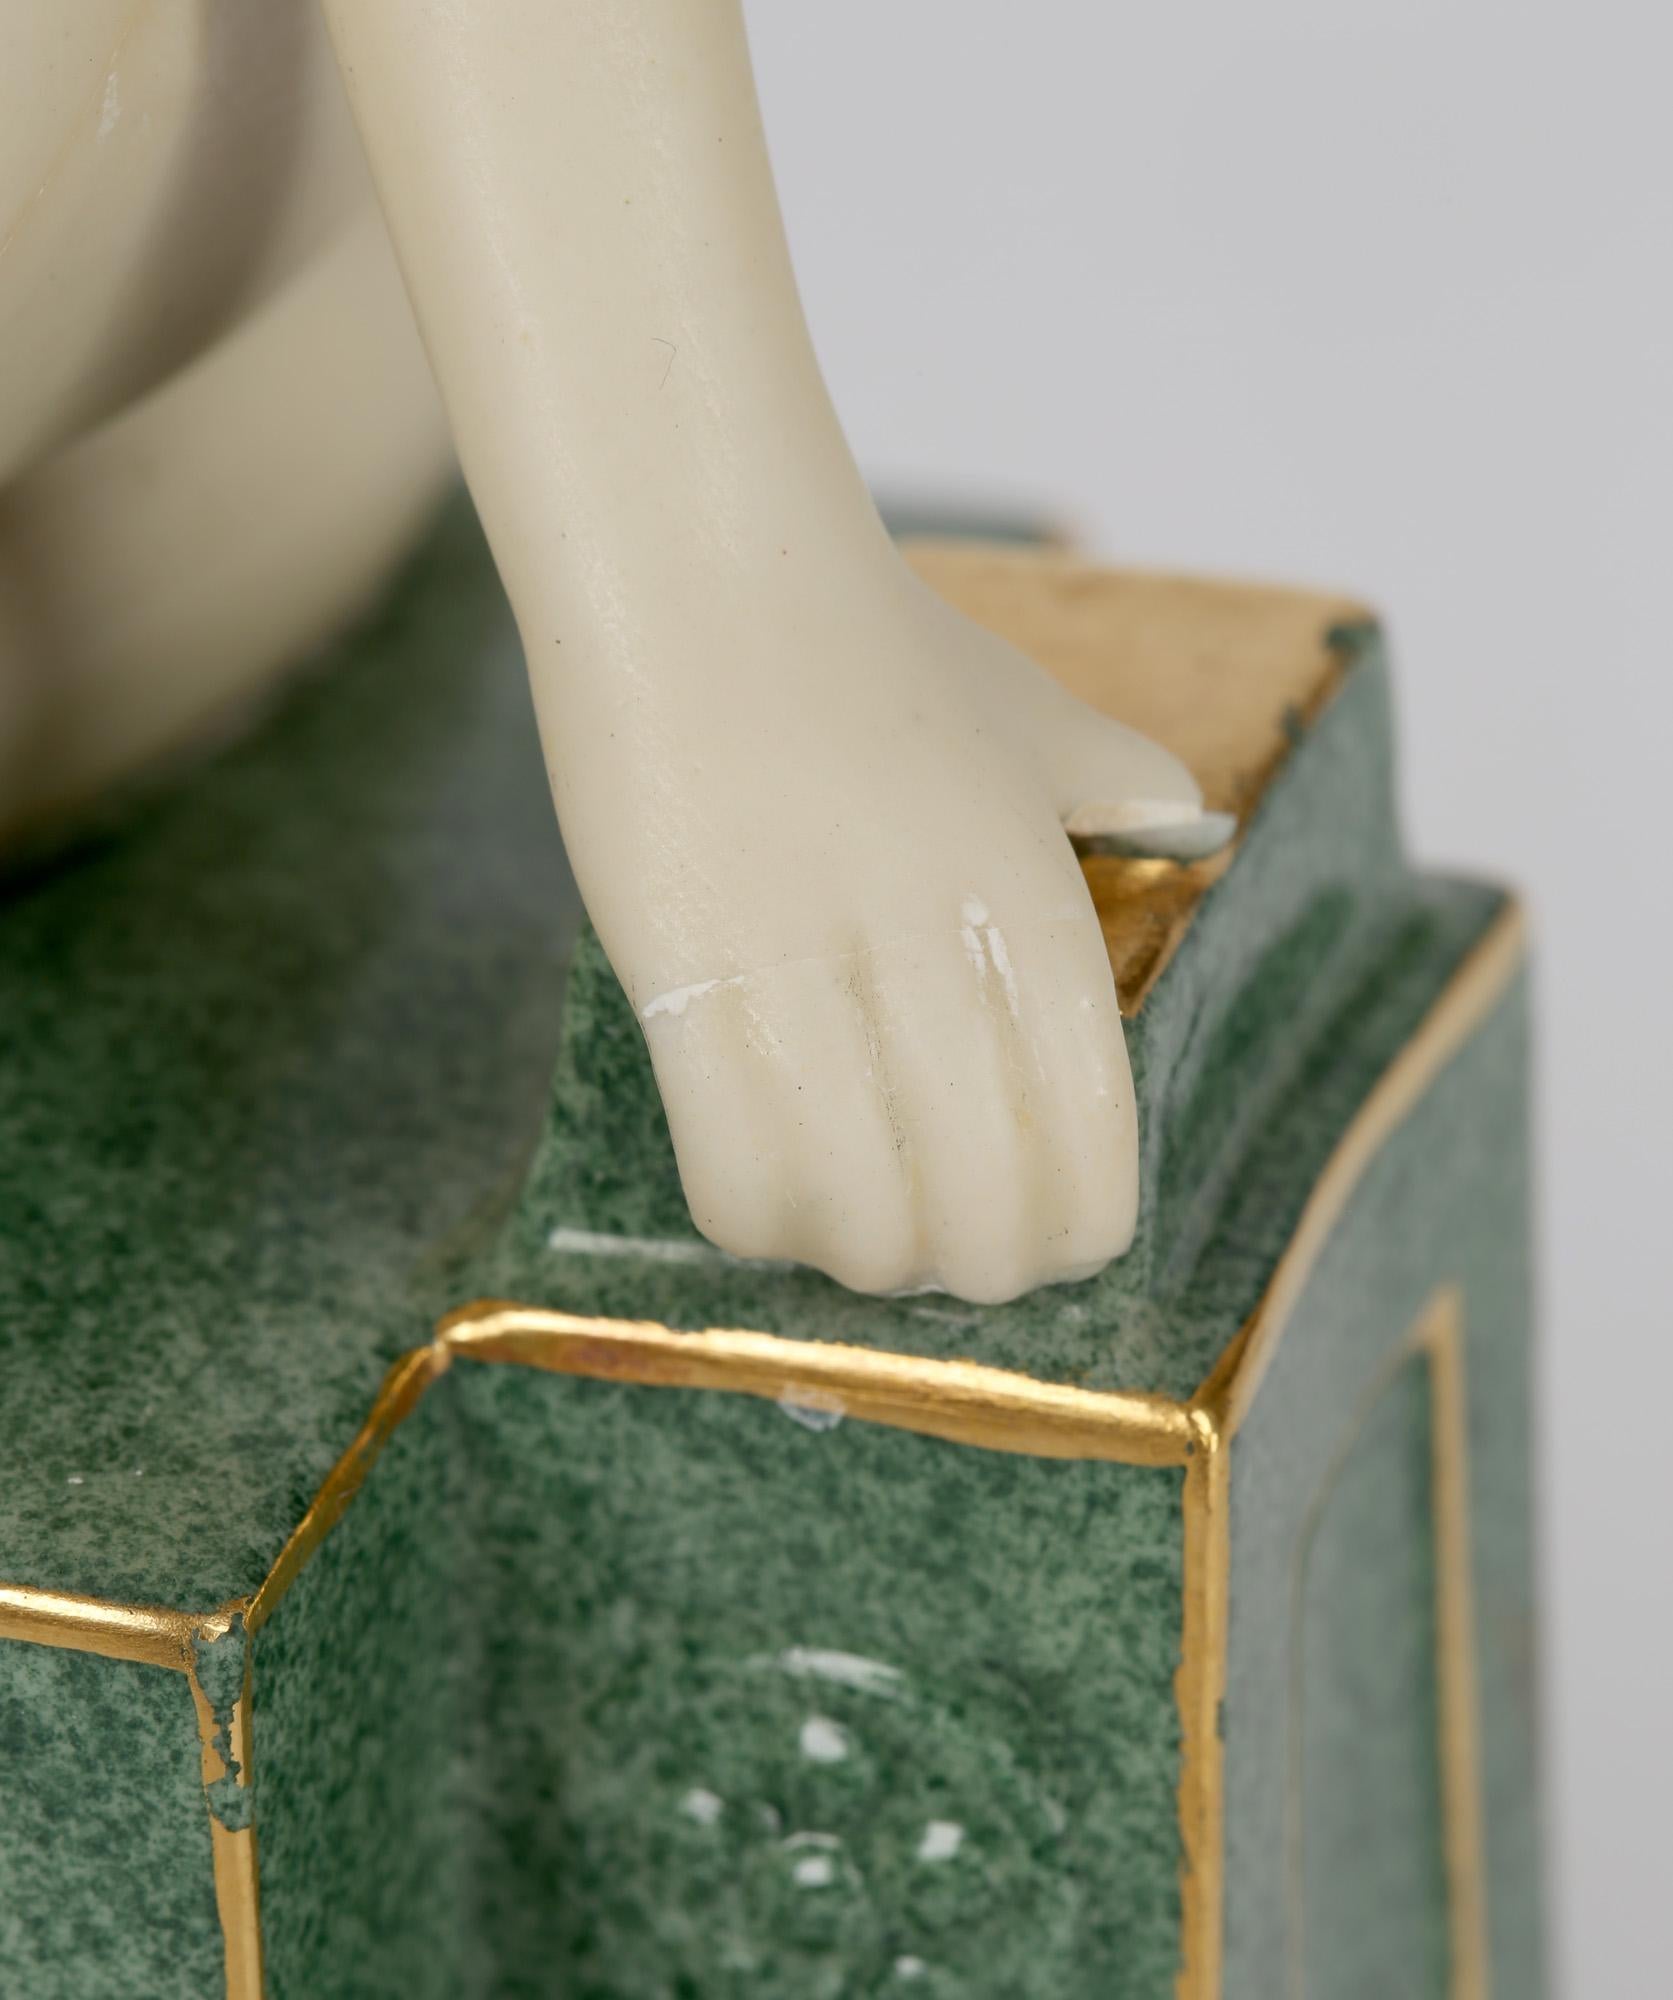 Frederick Gertner Royal Worcester Art Deco Porcelain Sculptural Naiad Figurine 1